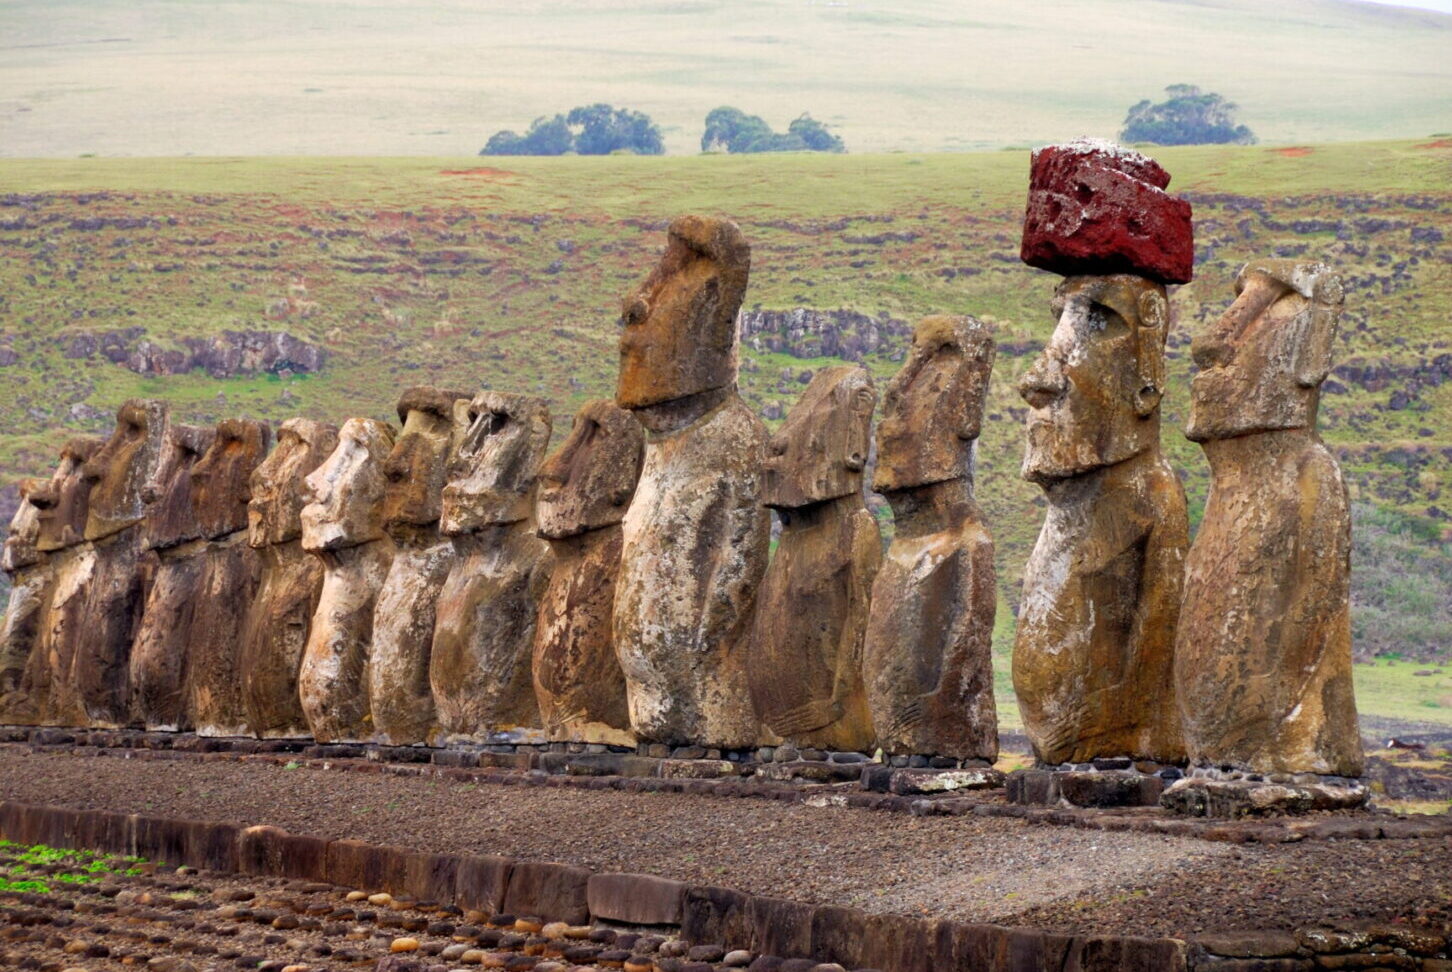 El significado de Rapa Nui en la cultura polinesia